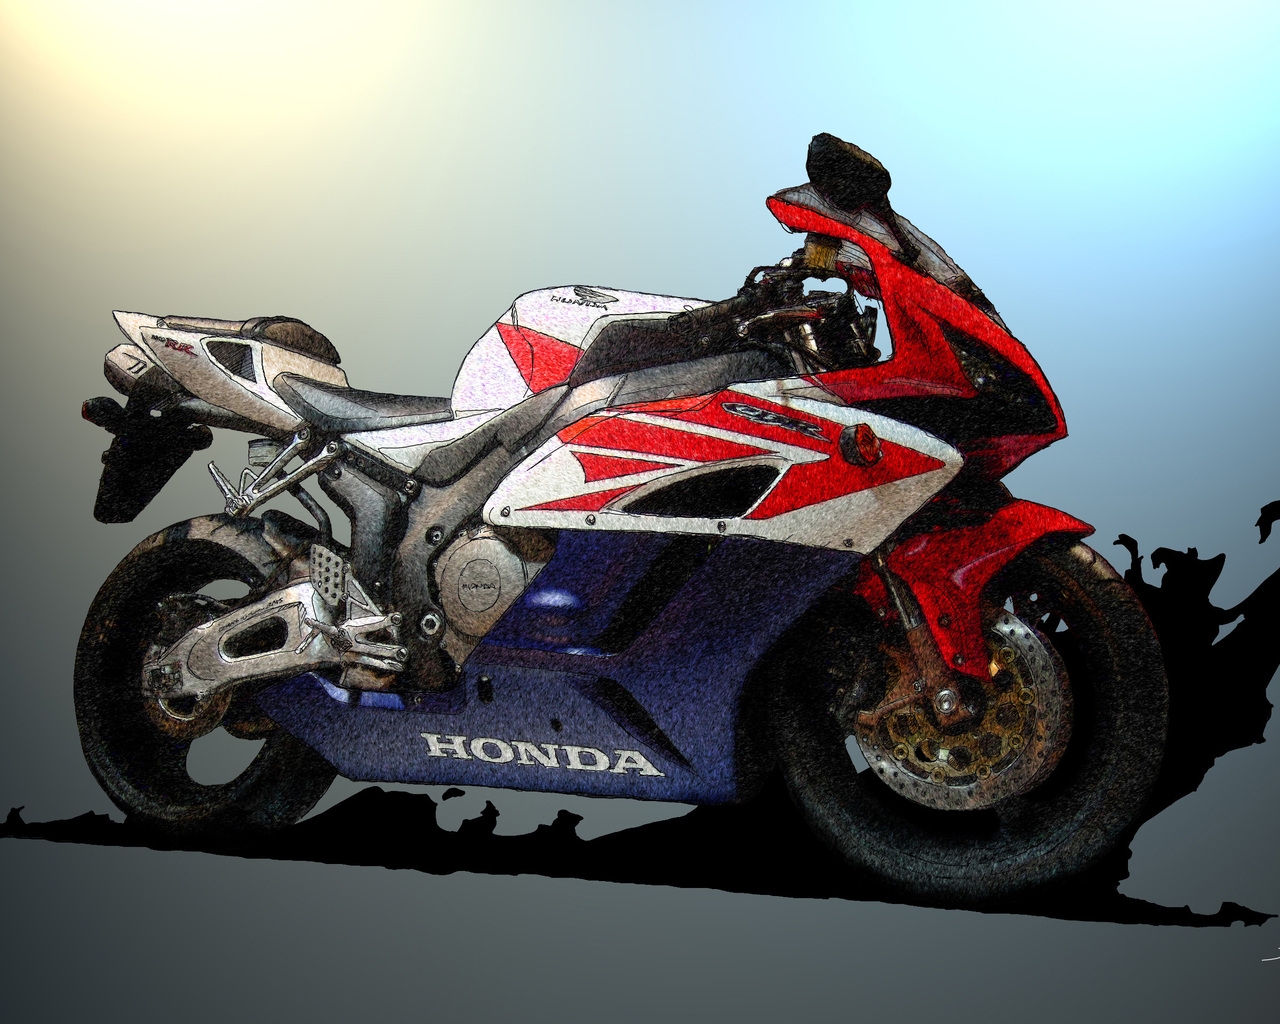 Honda CBR Sketch for 1280 x 1024 resolution